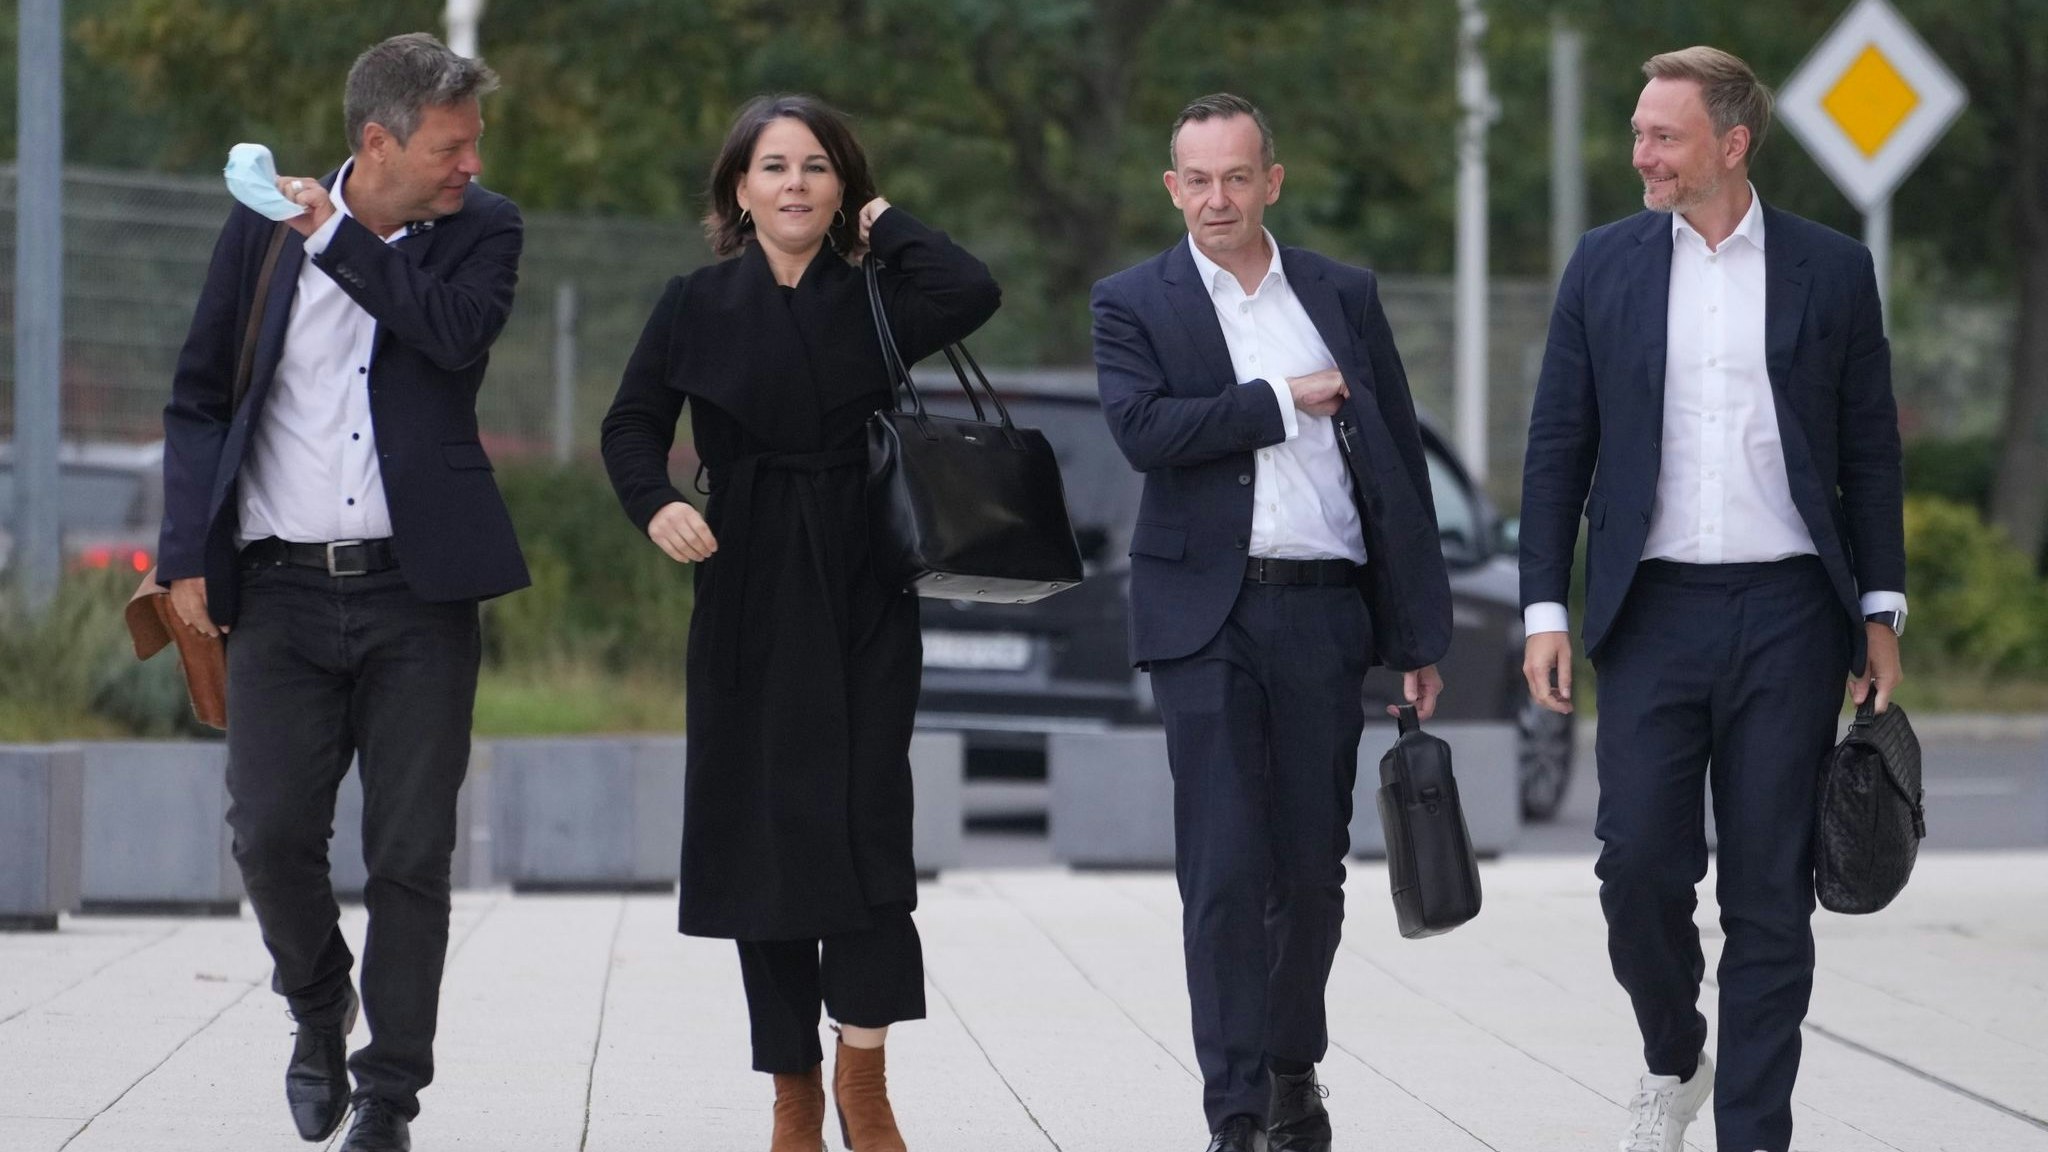 Die Bundesvorsitzenden der Grünen,Robert Habeck (links) und Annalena Baerbock, gemeinsam mit FDP-Generalsekretär Volker Wissing und FDP-Chef Christian Lindner. dpa/Nietfeld